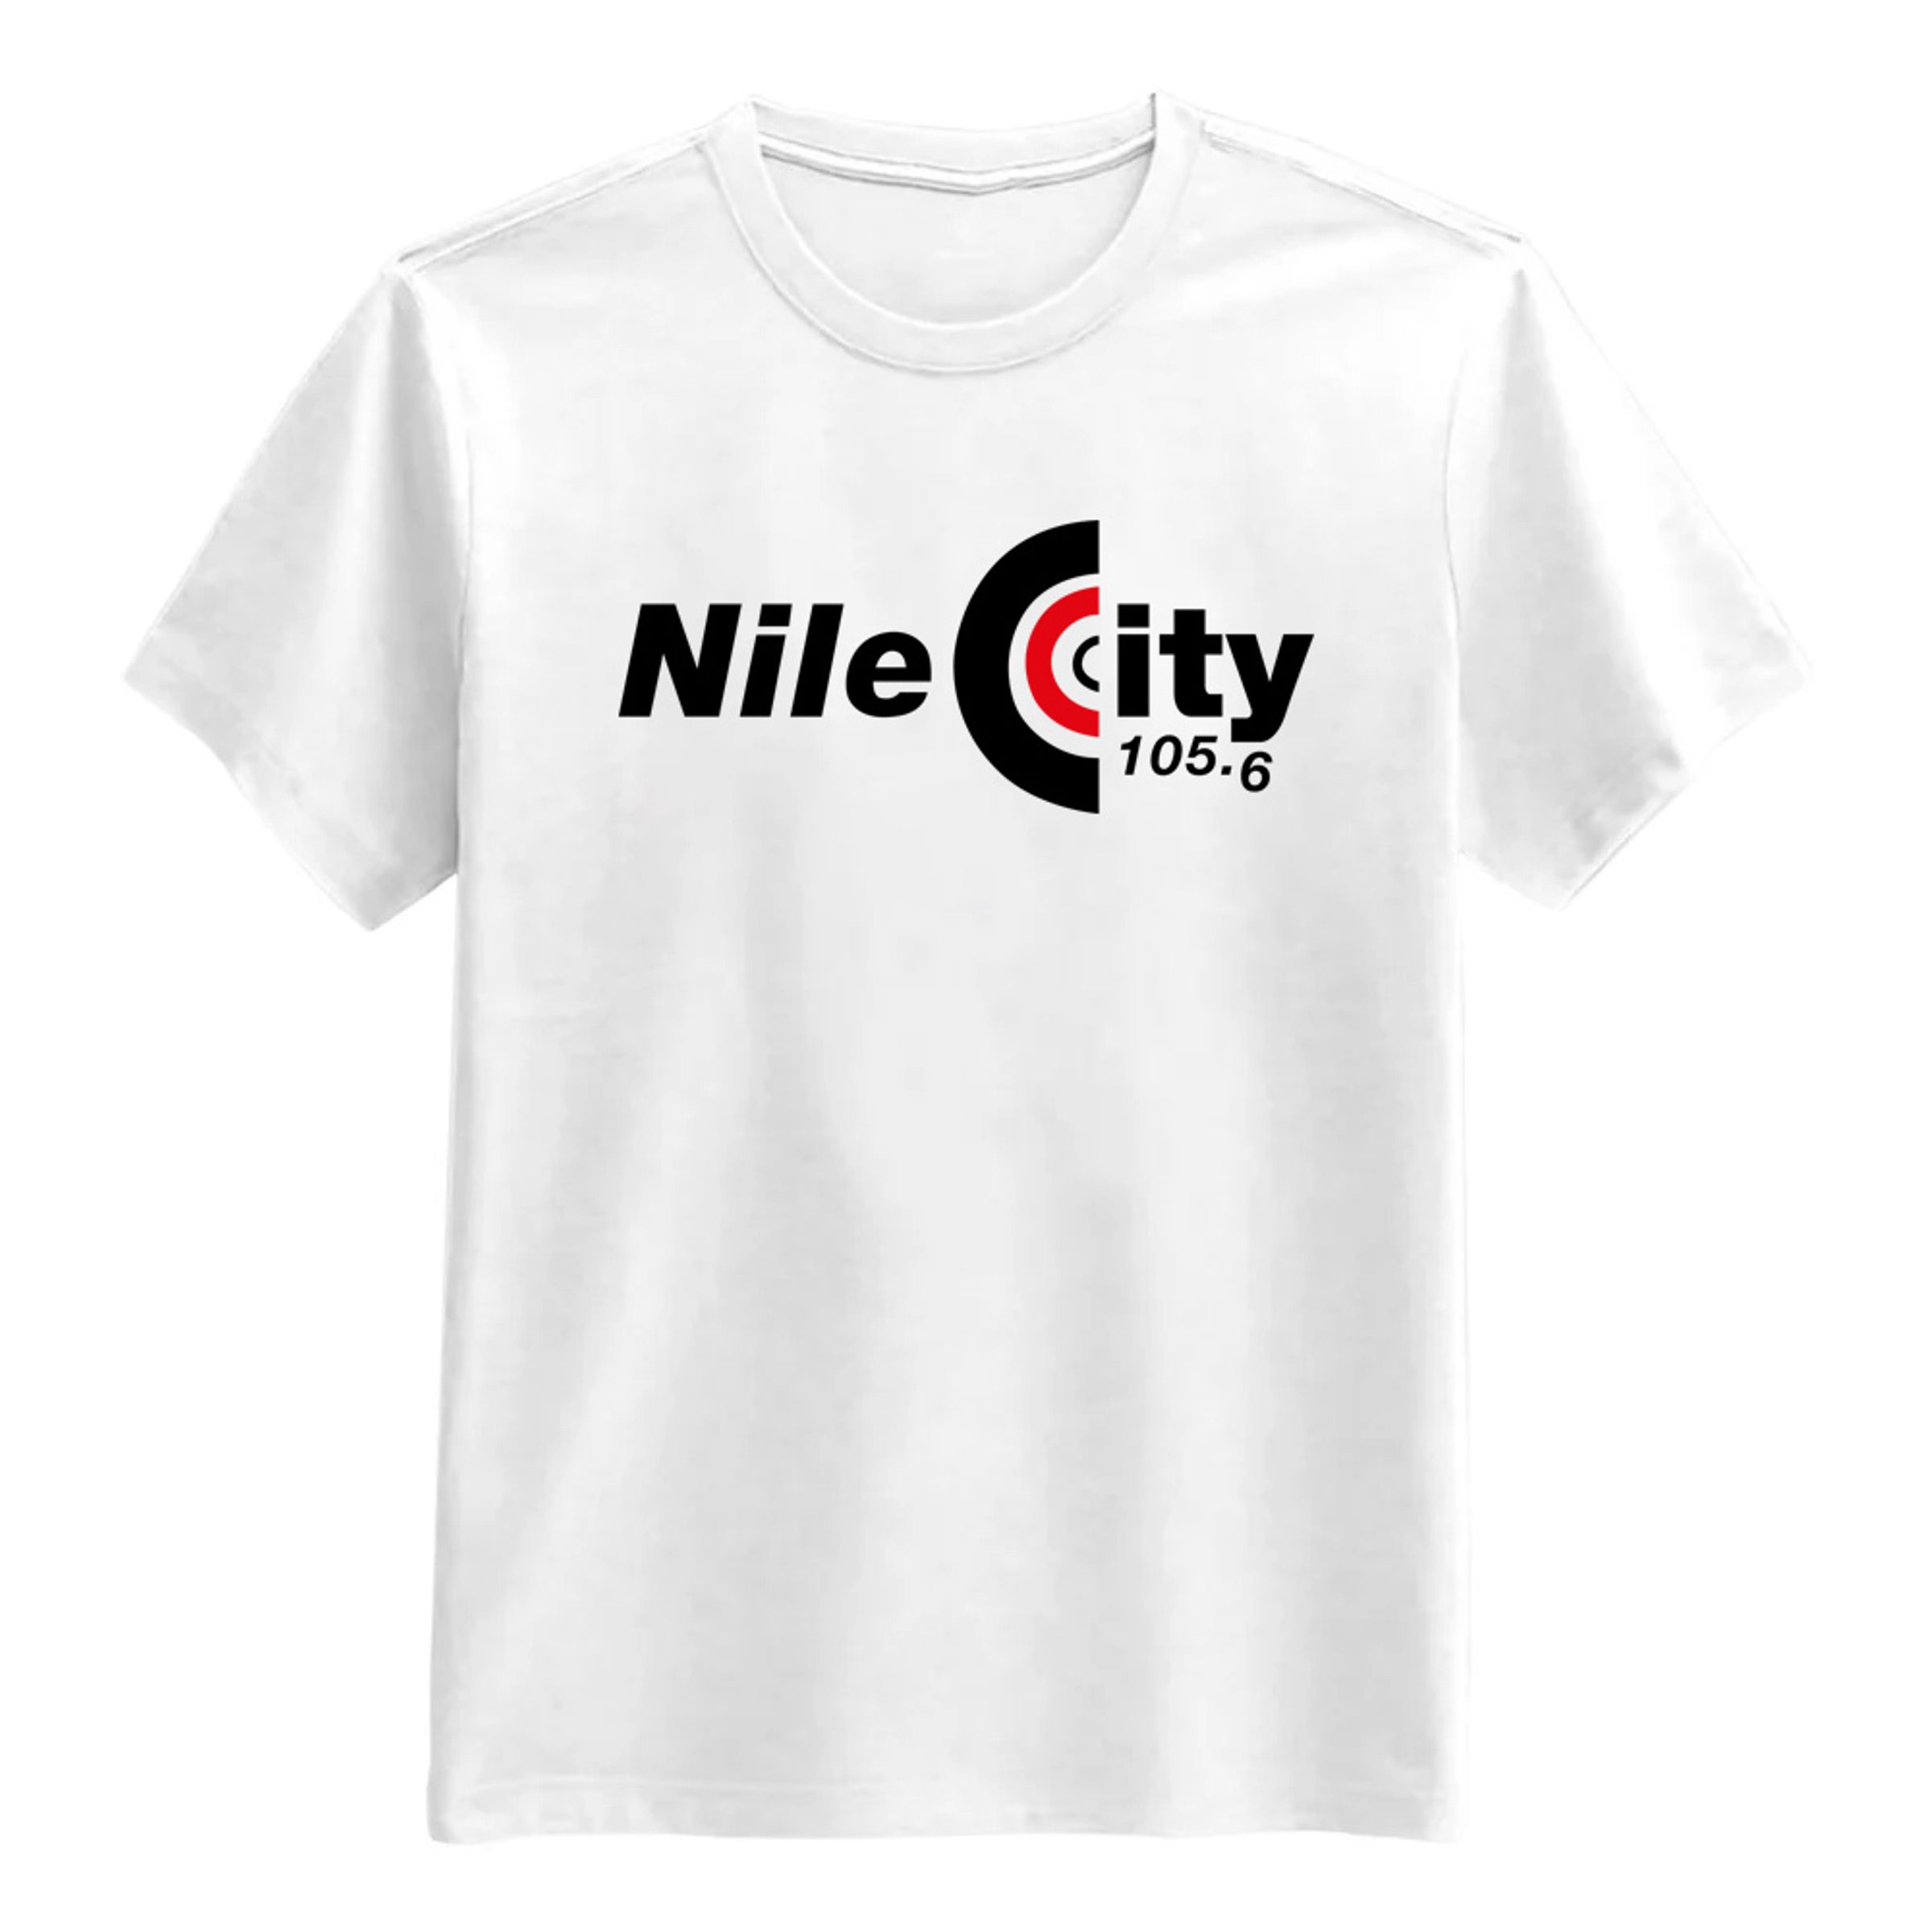 Nile City T-Shirt - Large